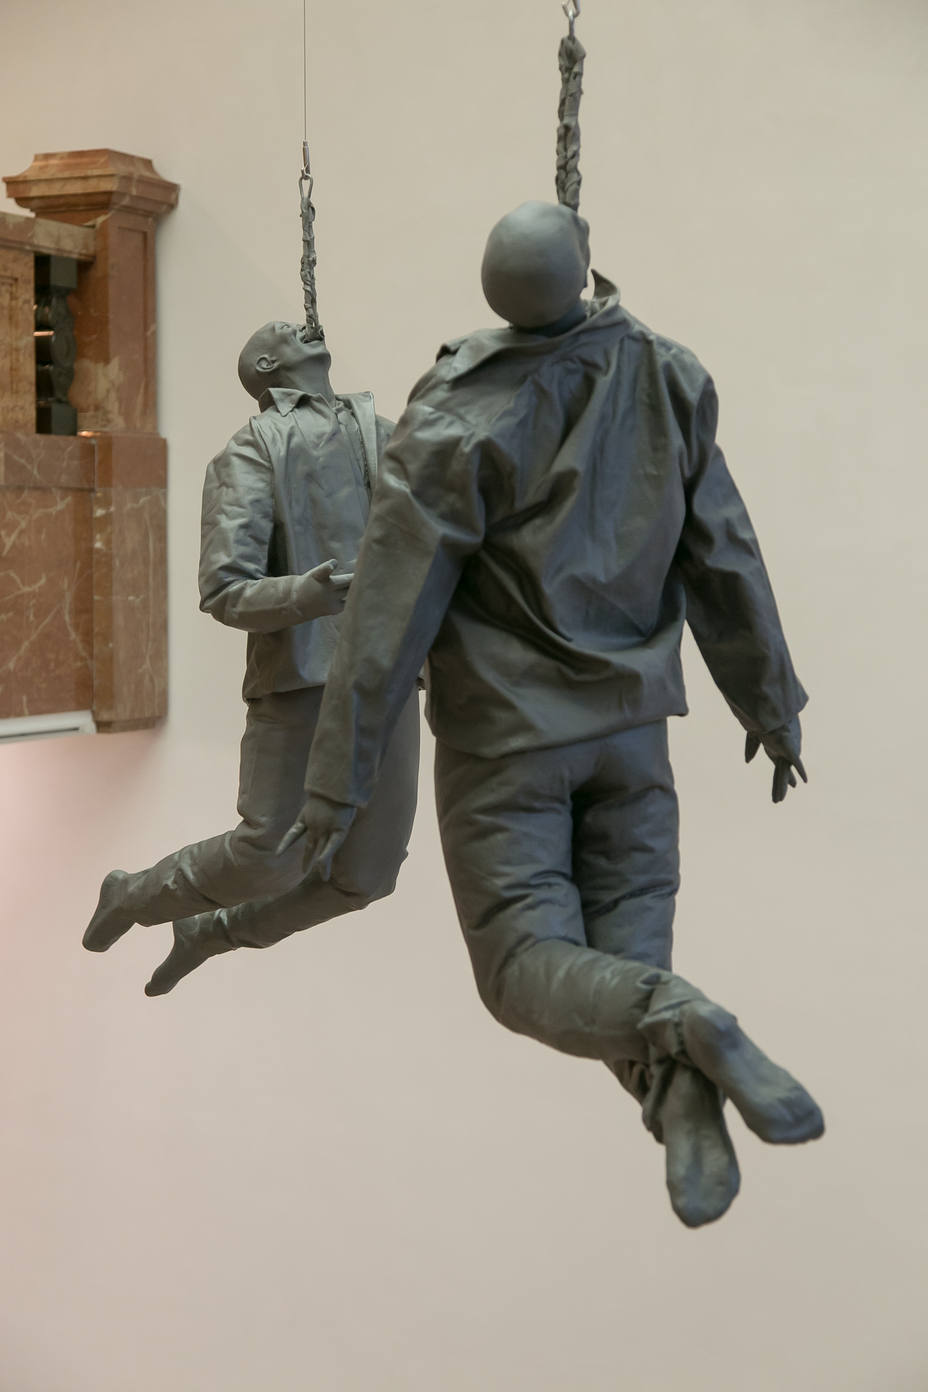 Hanging figures, de Juan Muñoz